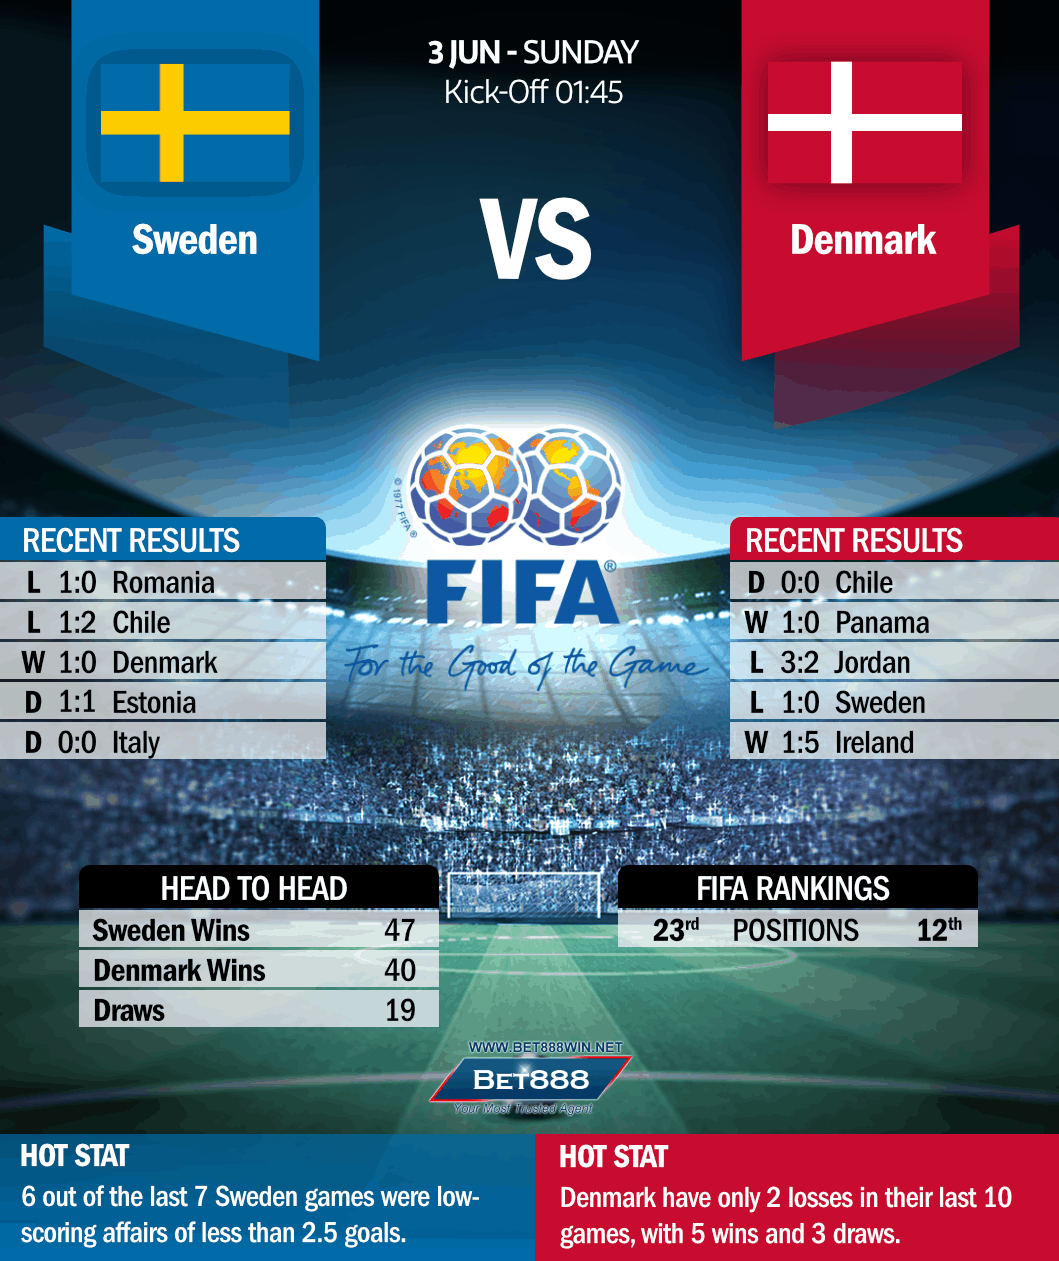 Sweden vs Denmark 03/06/18